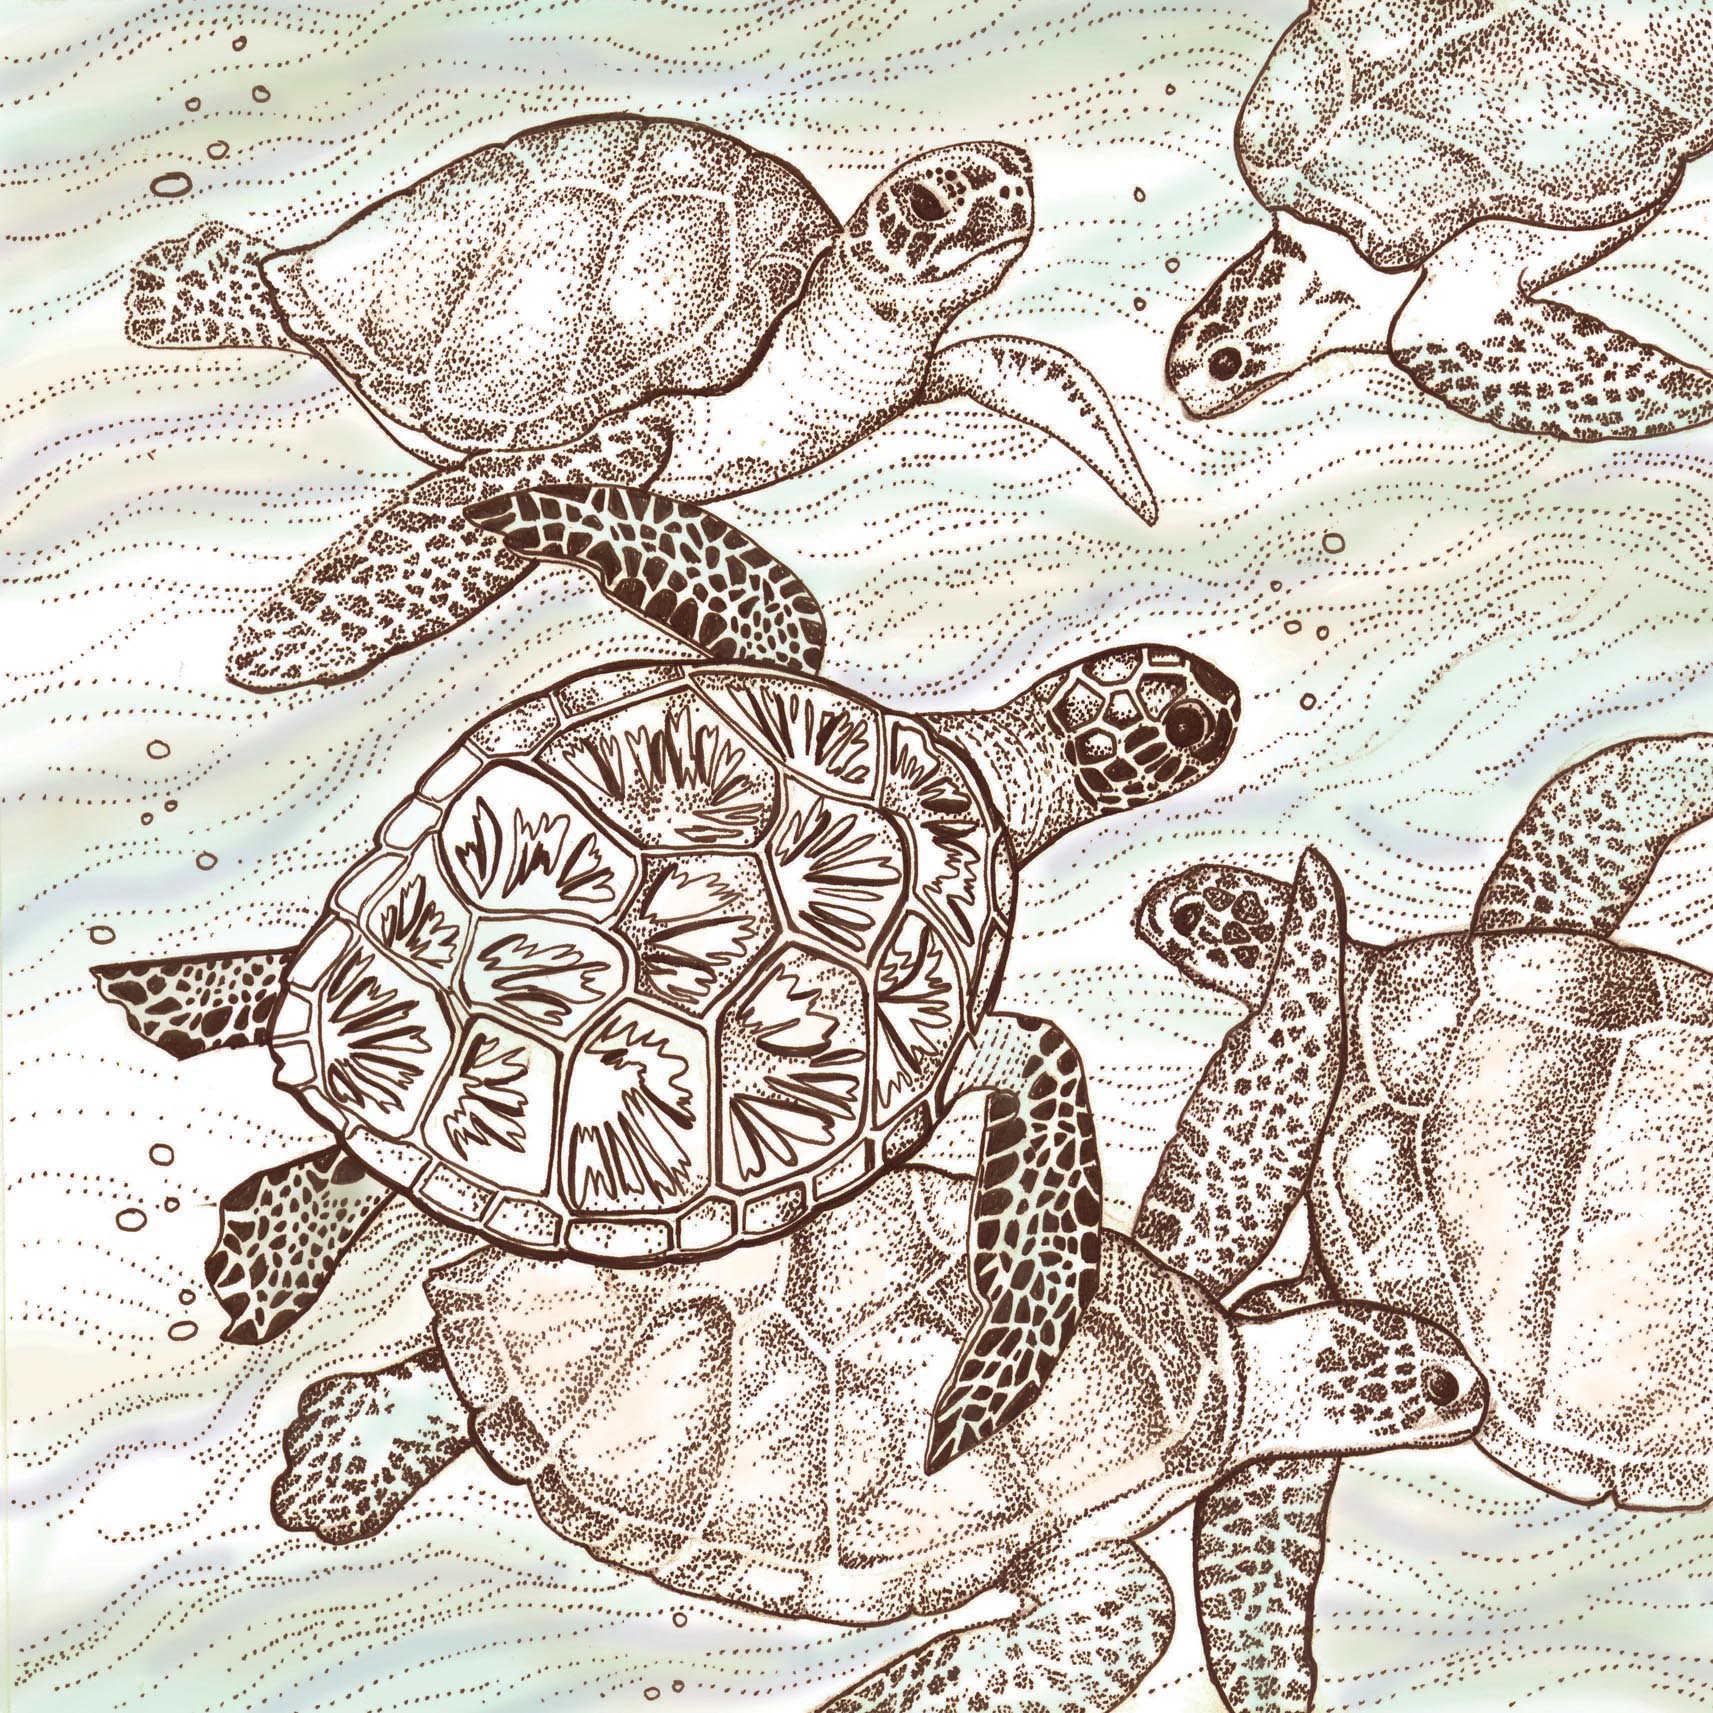 Swimming Turtles Greeting Card 